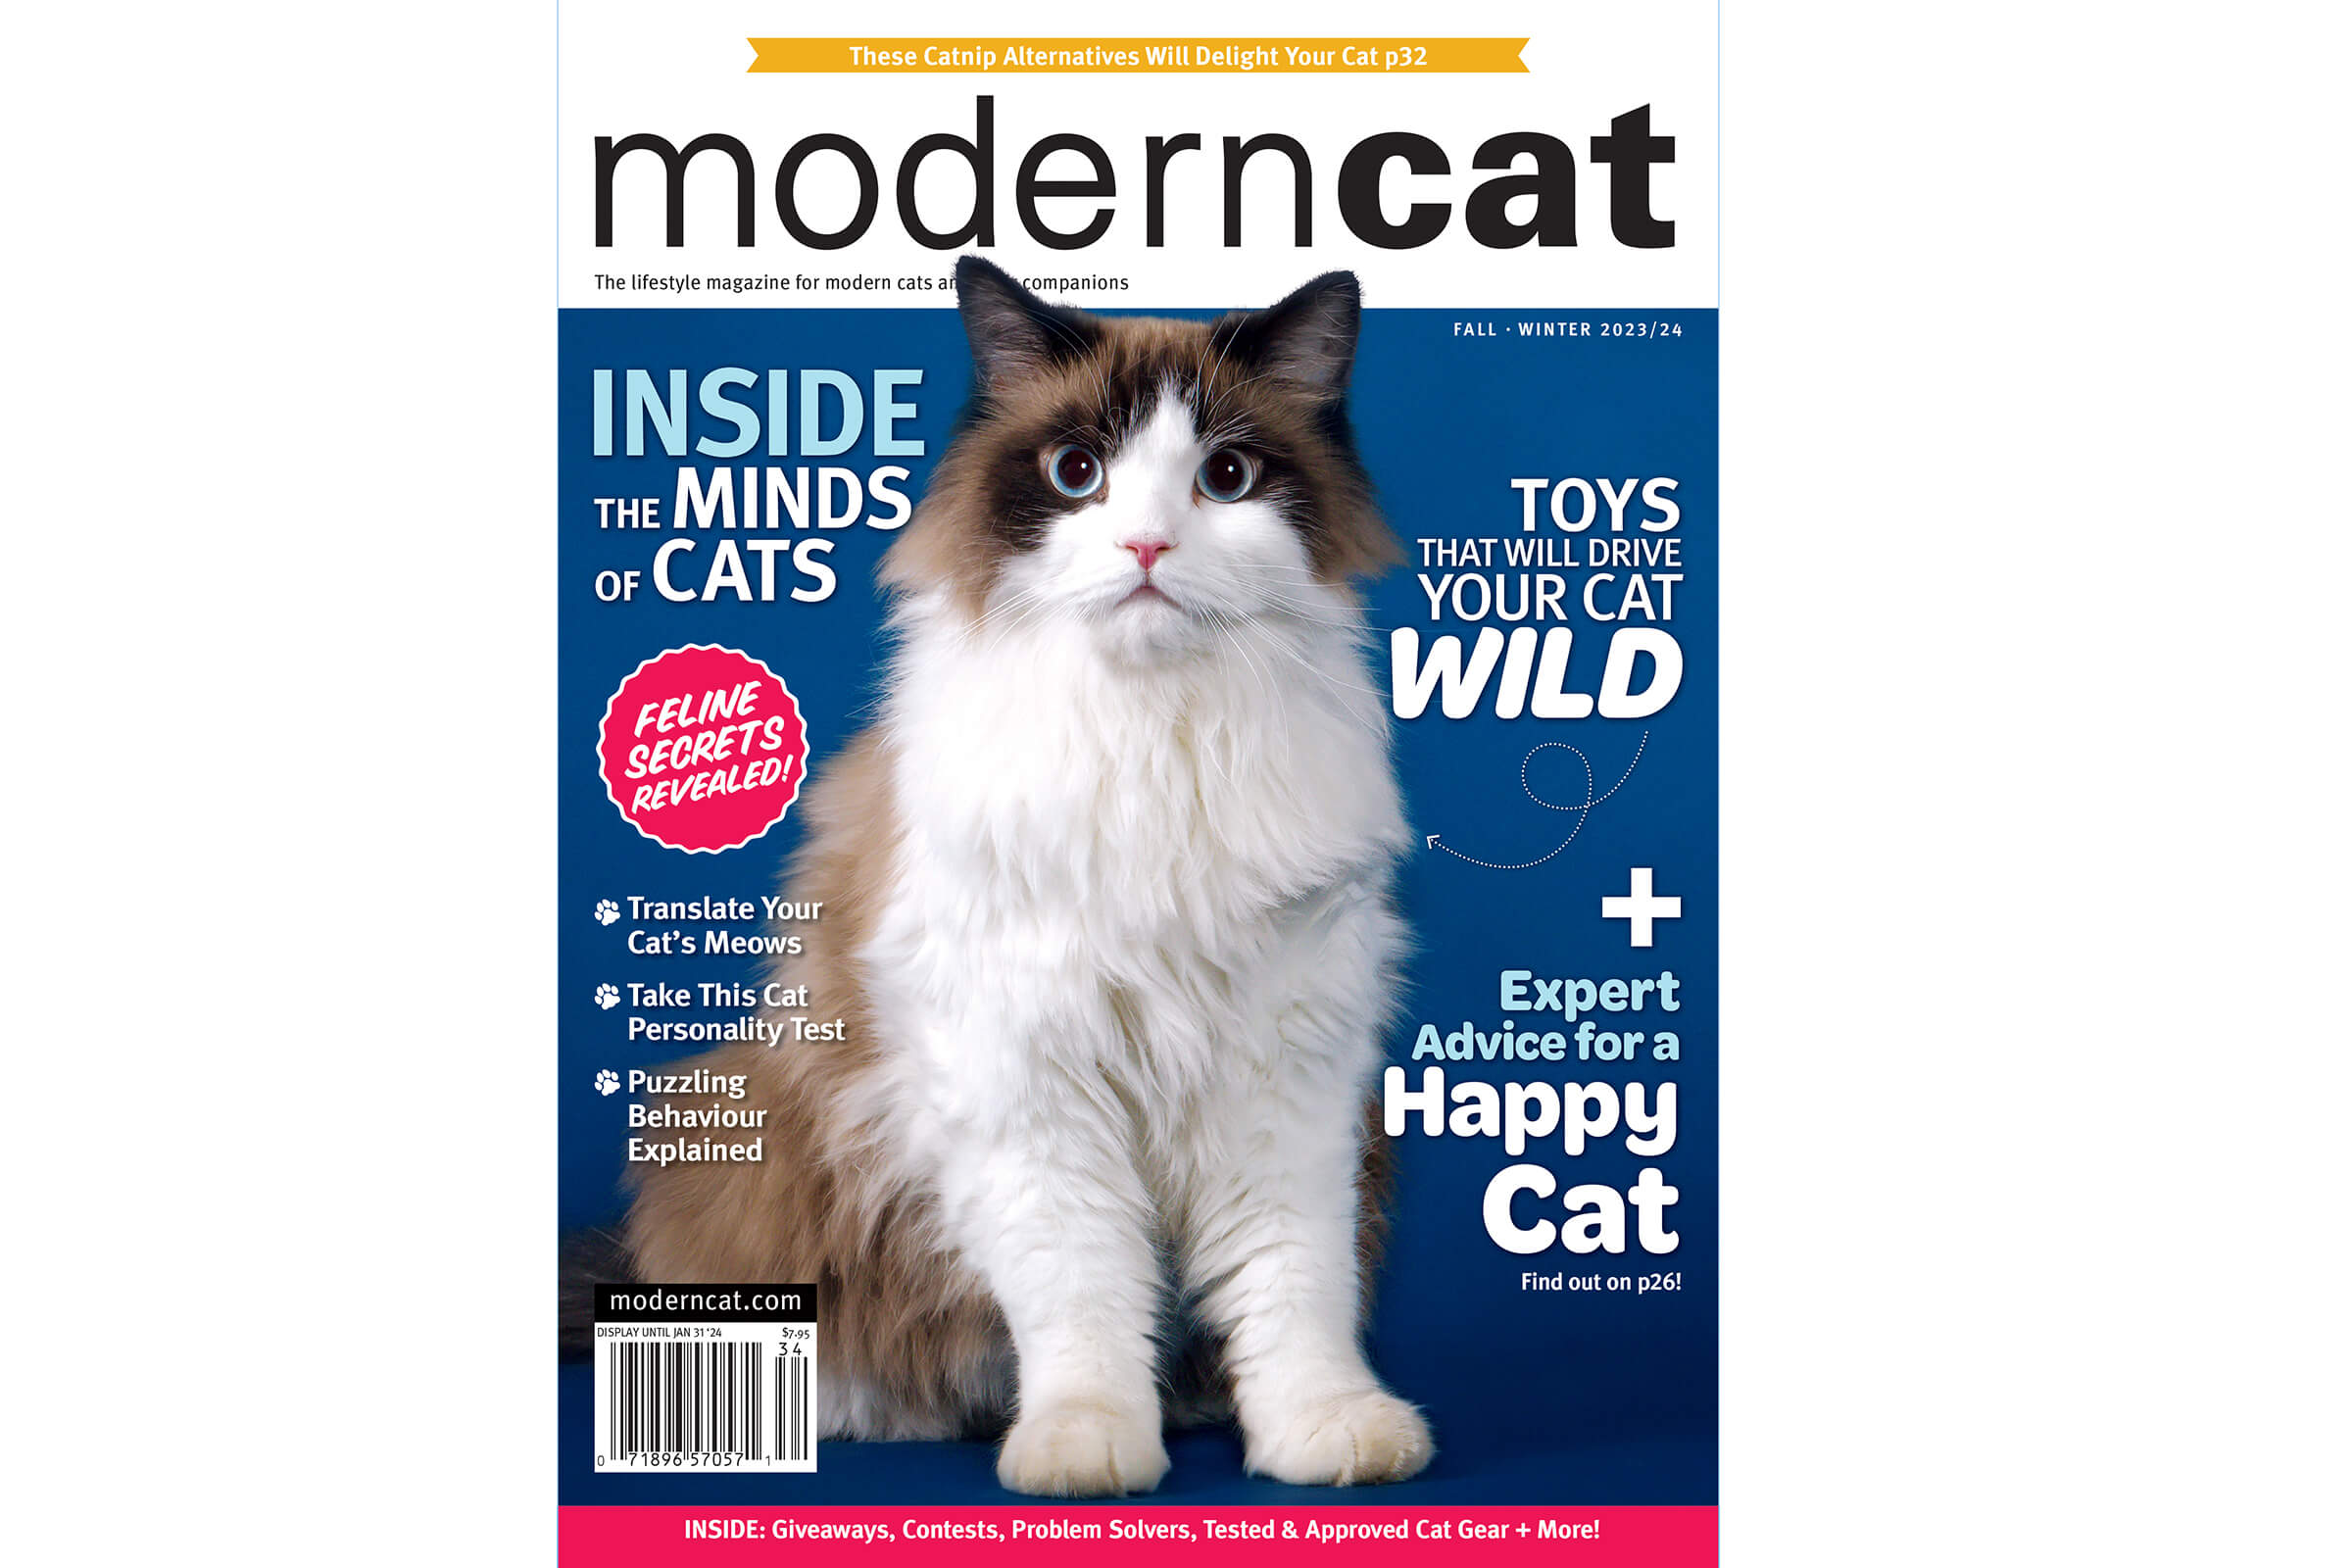 Modern Cat Magazine cover by Karen Weiler